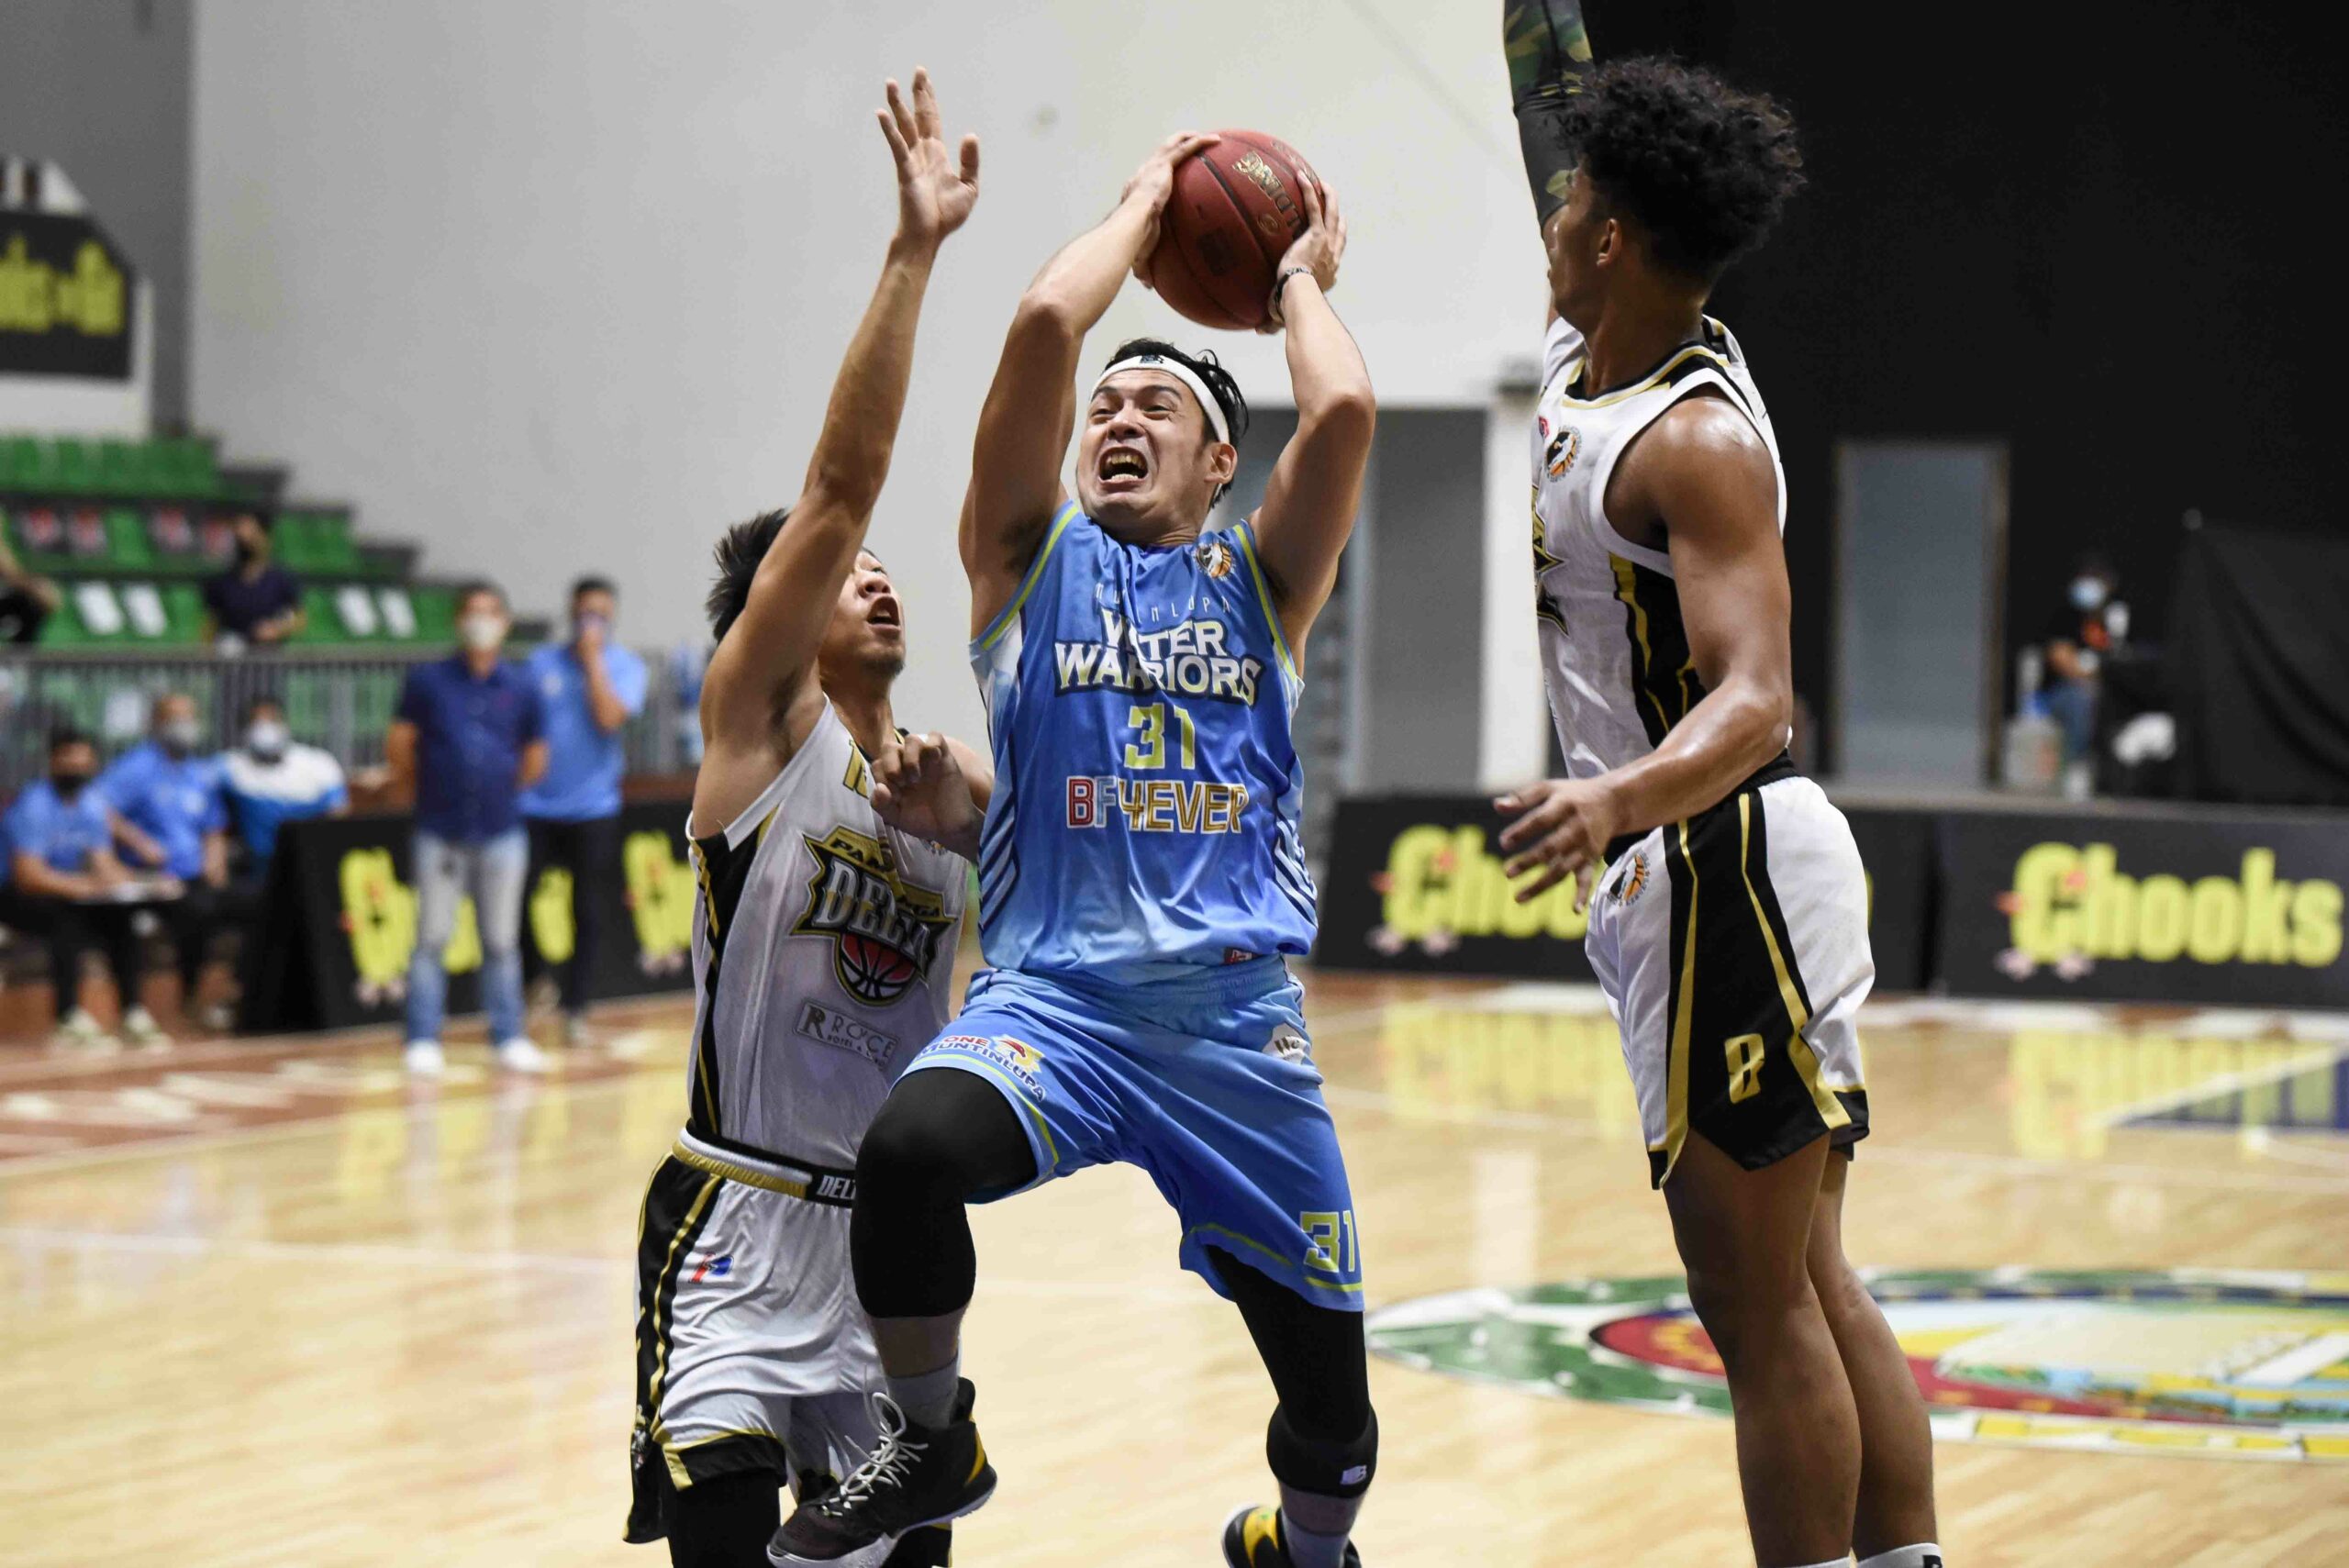 2021-Chooks-NBL-Pampanga-vs-Muntinlupa-Biboy-Enguio-Muntinlupa-scaled Yong, Dyke shine as Pampanga thrashes Muntinlupa in NBL Basketball NBL News  - philippine sports news